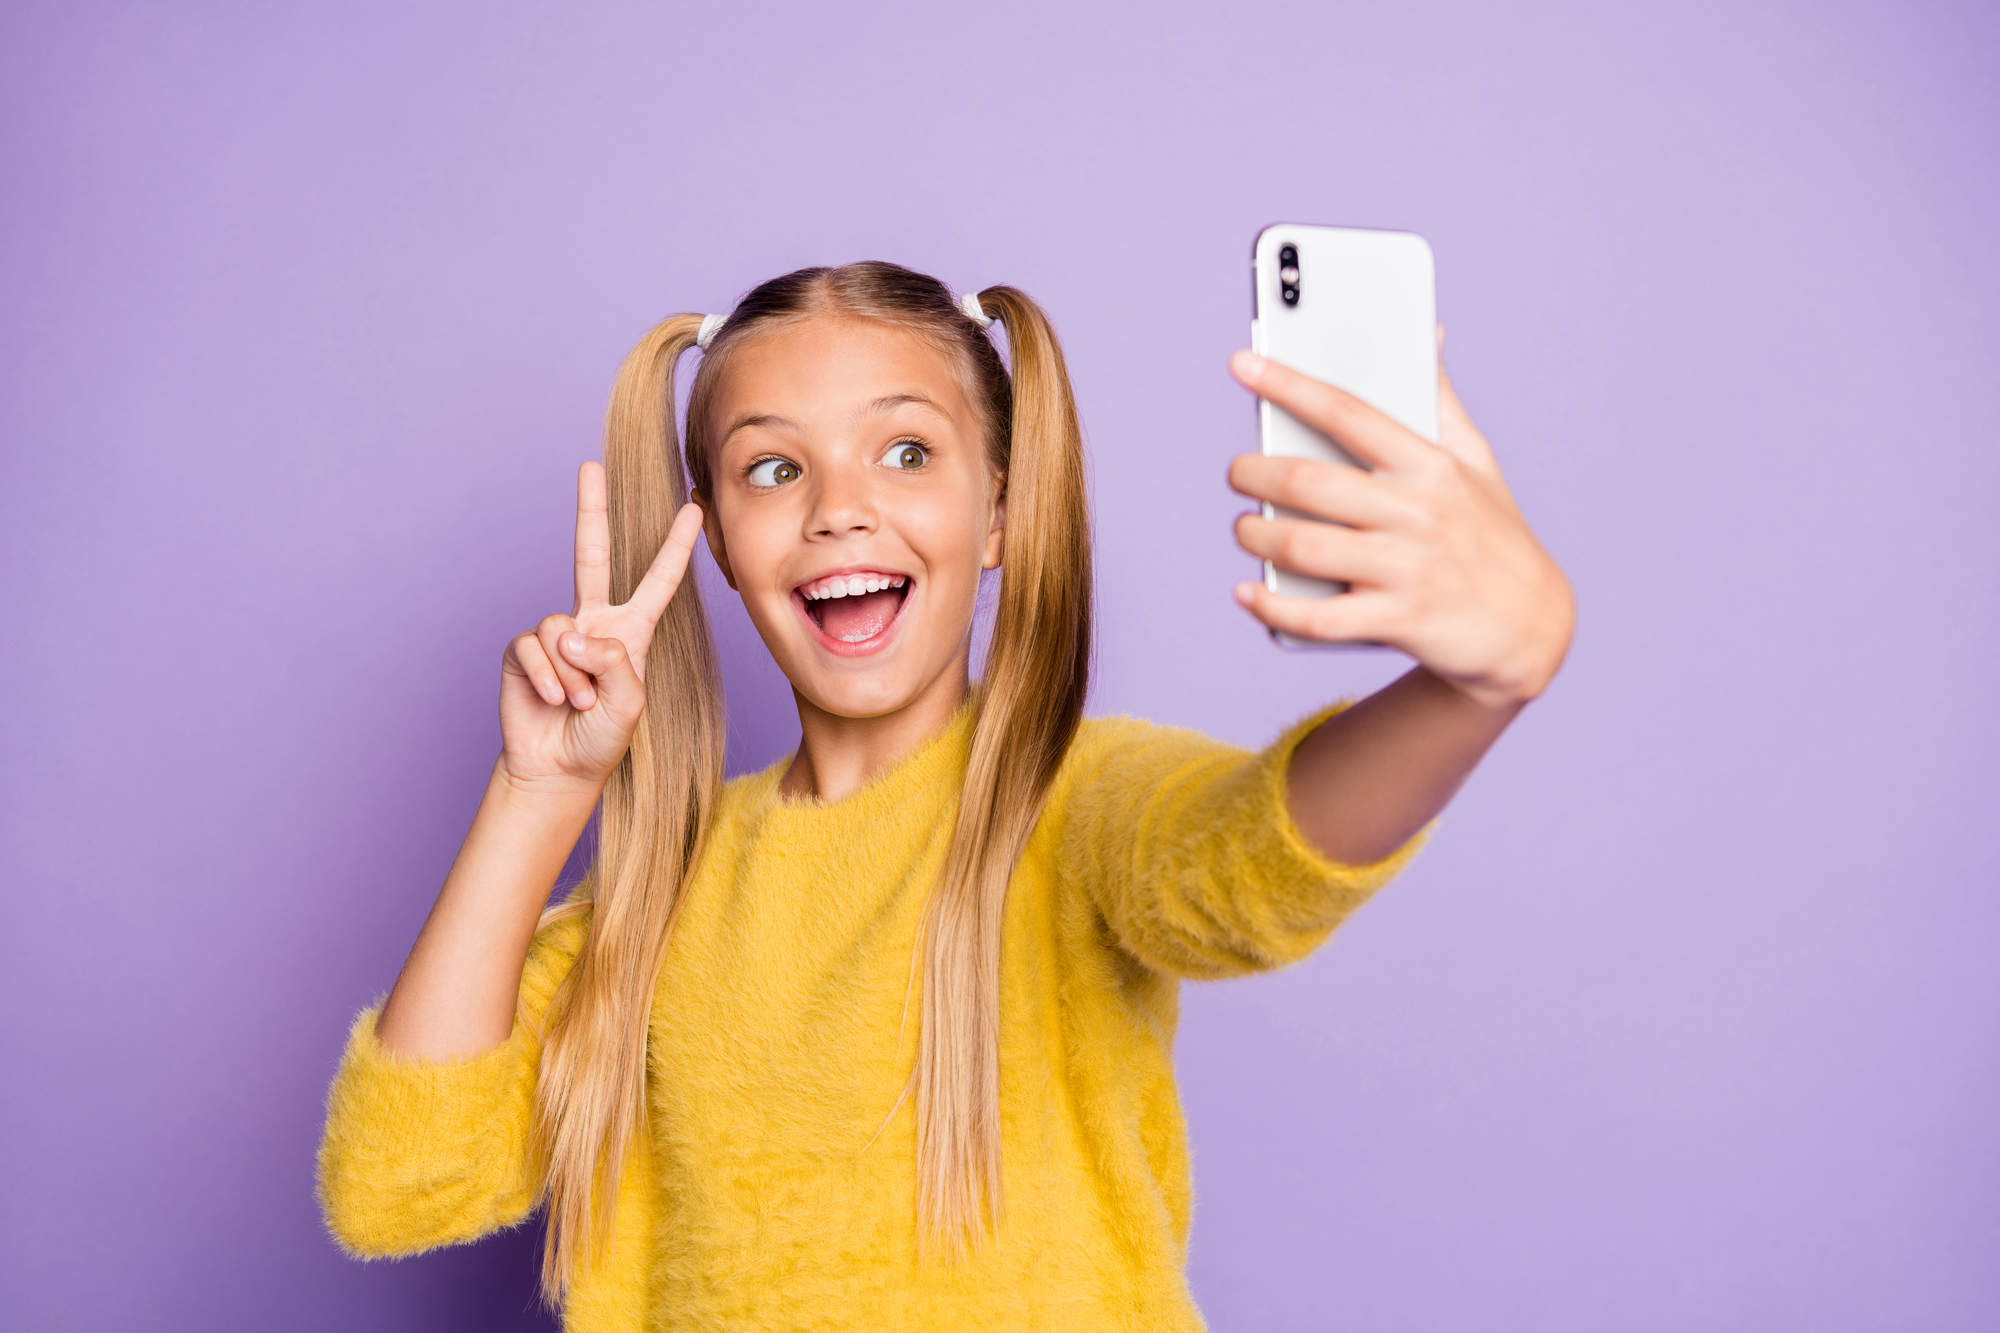 Bambina sorridente che fa il segno di vittoria mentre si fa un selfie con lo smartphone; concept: baby influencer, social media